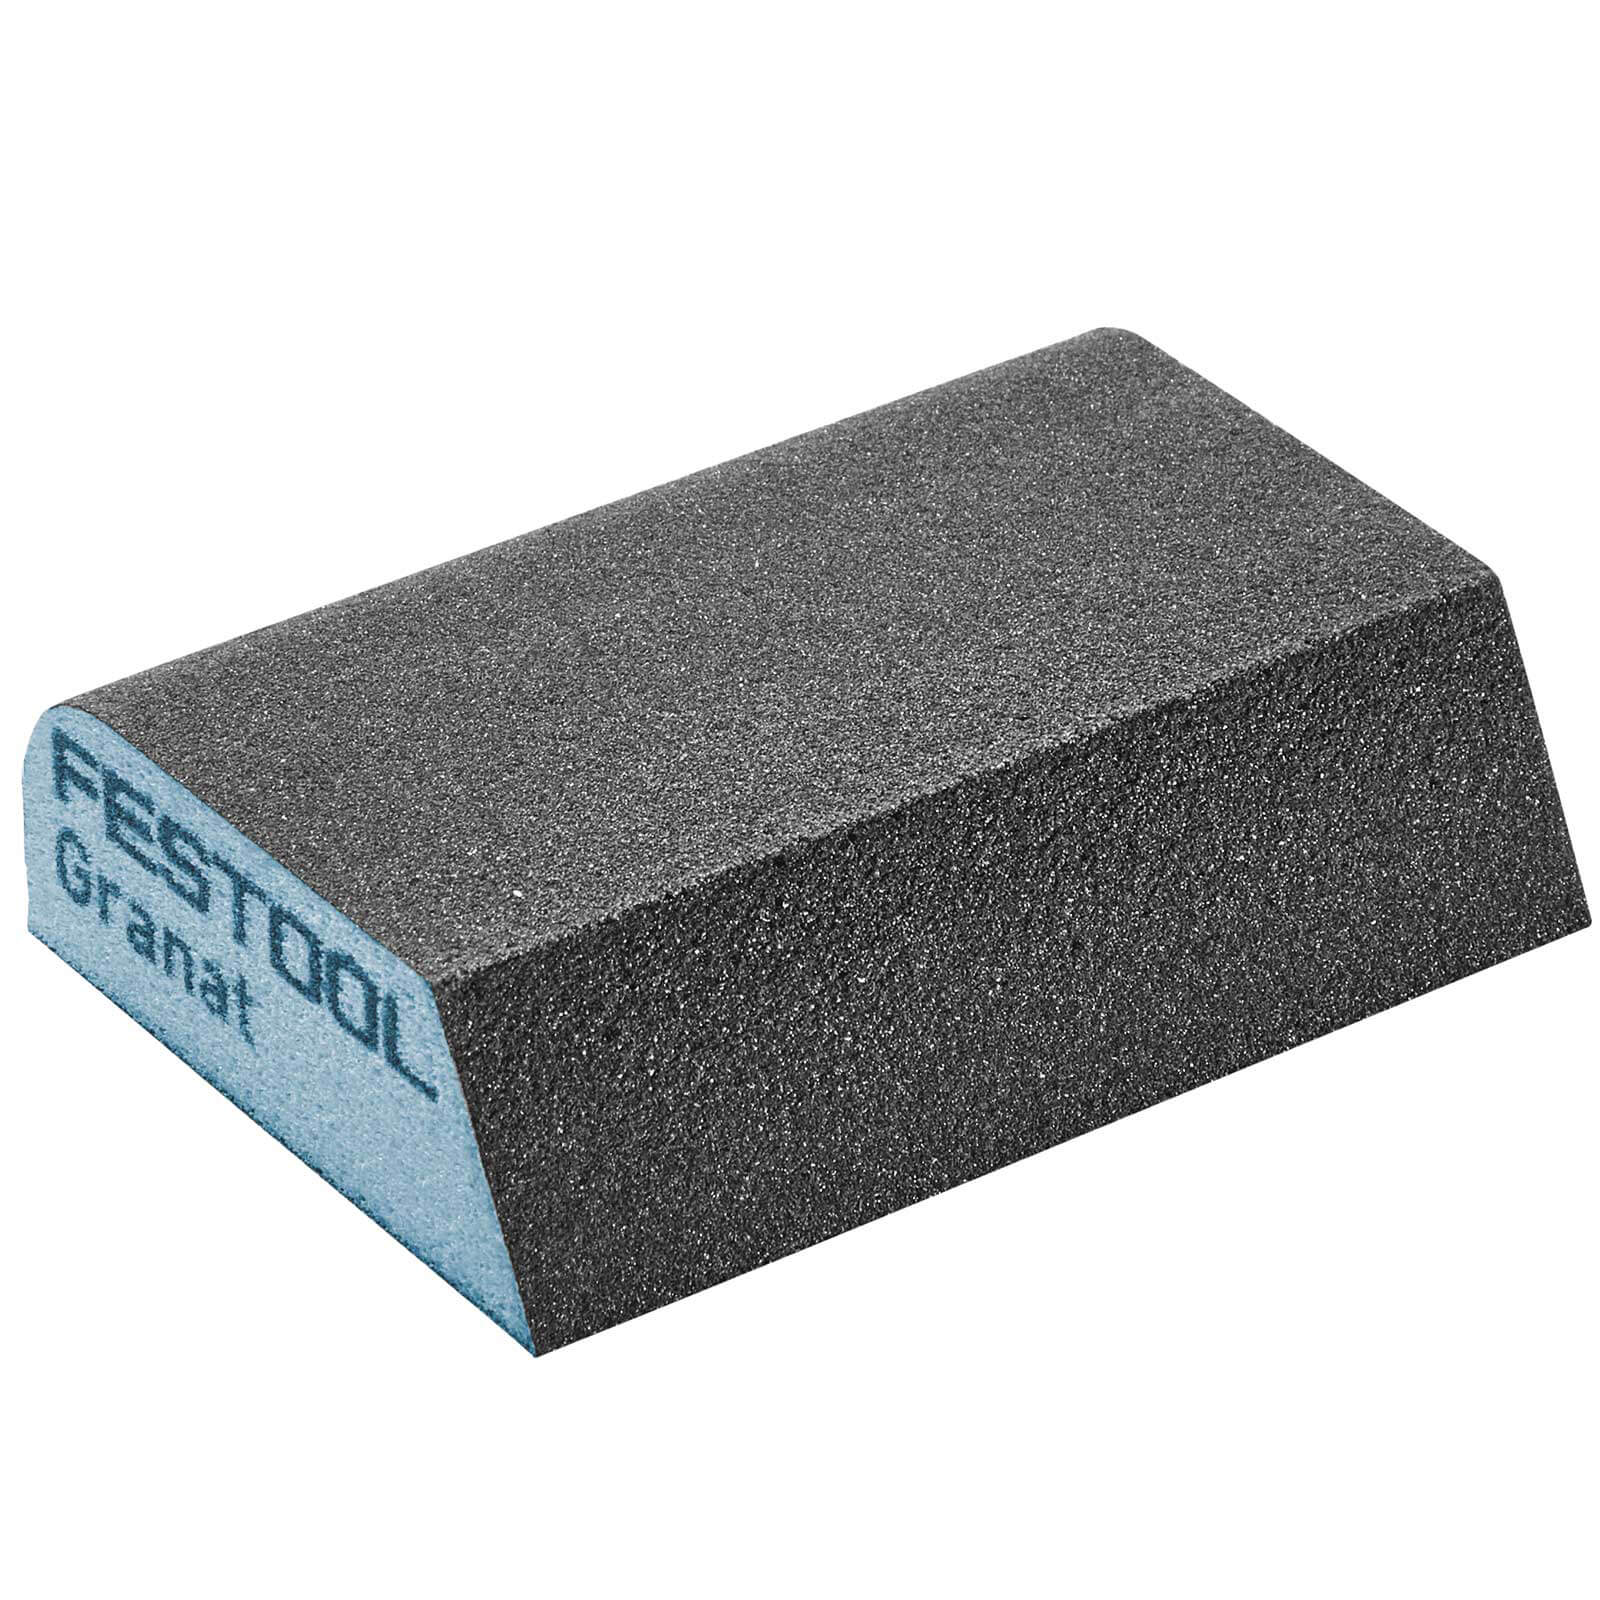 Image of Festool Abrasive Hand Sanding Combi Sponge 120g Pack of 6